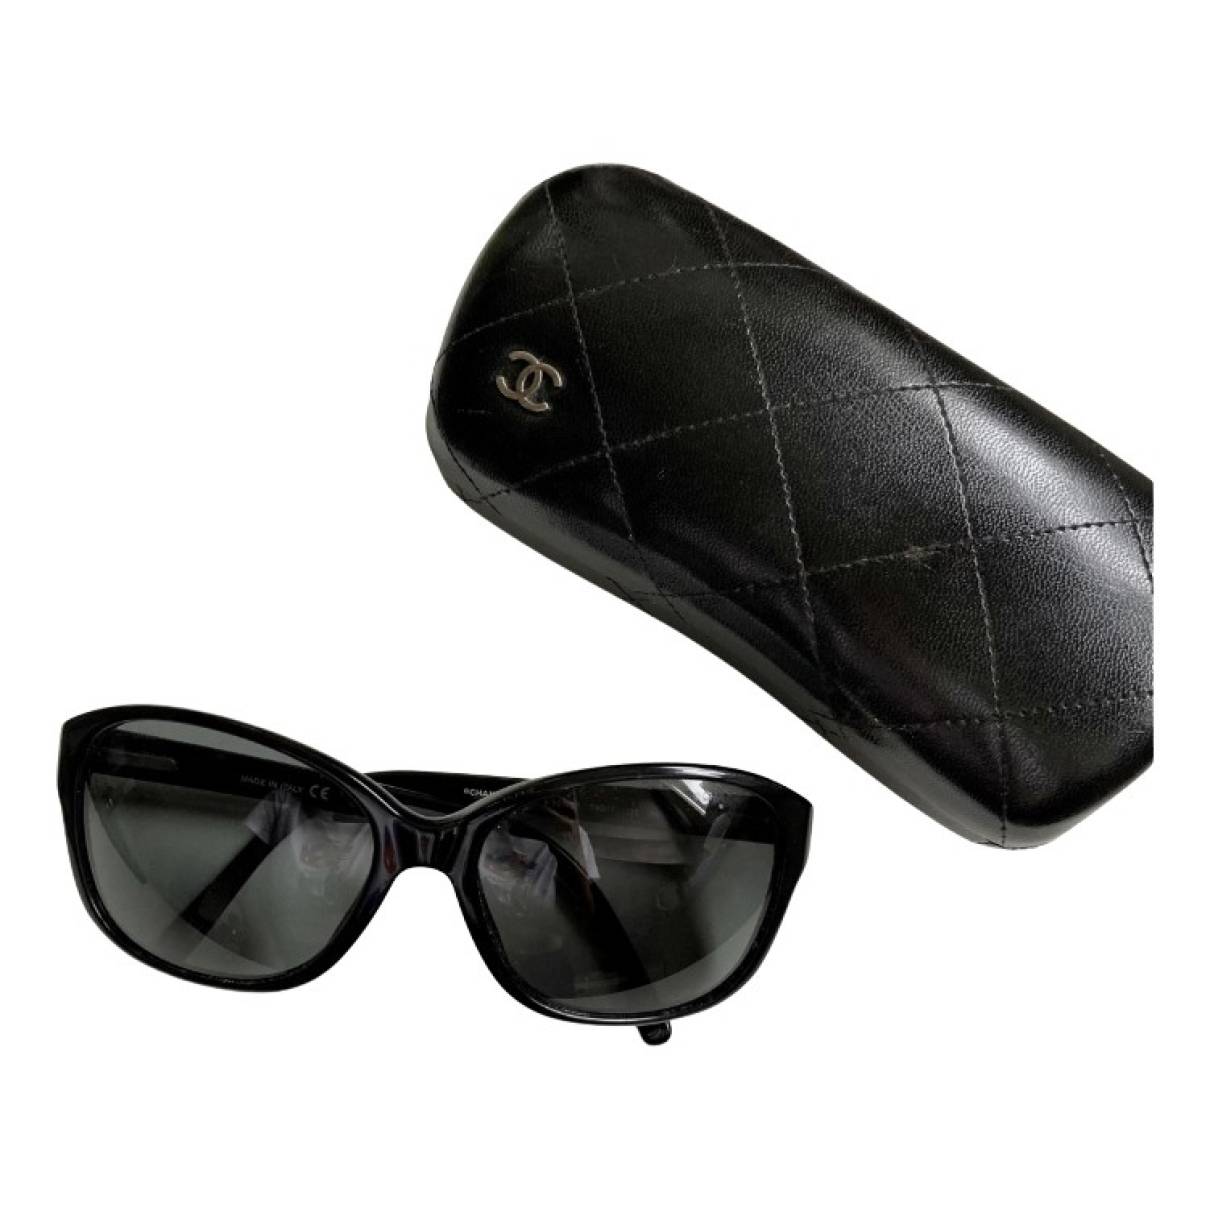 Sunglasses Chanel Black in Plastic - 33183733